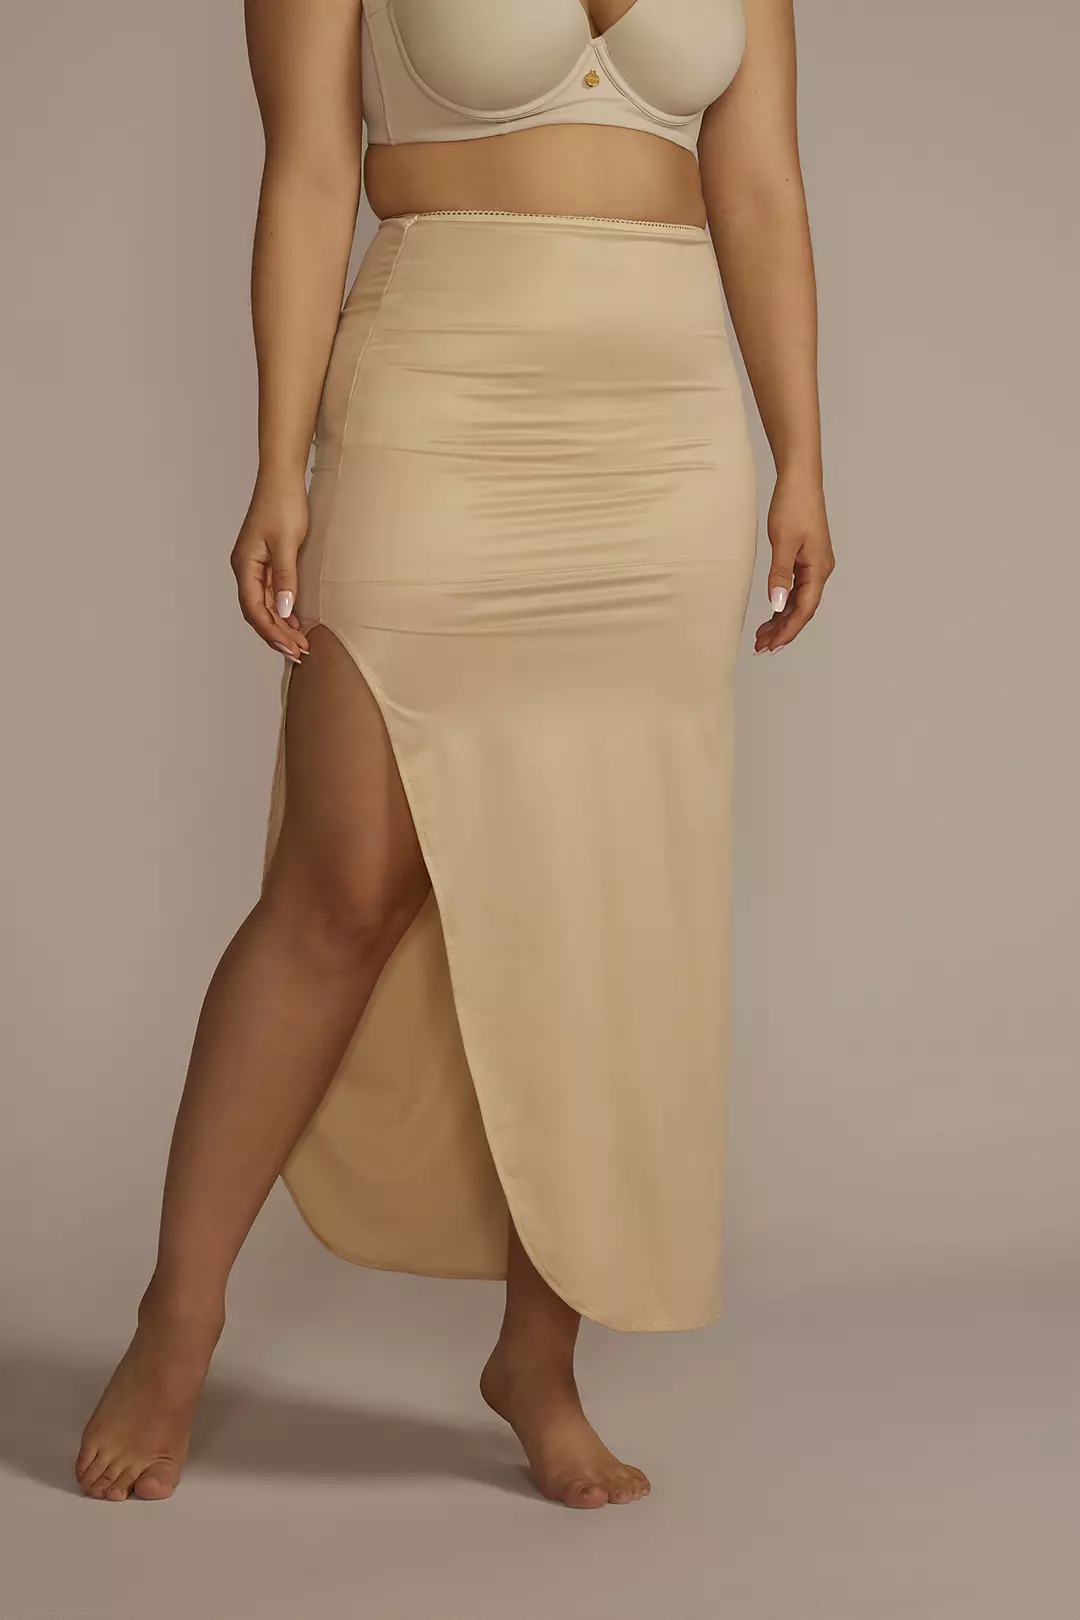 Full Length Skirt Slip Image